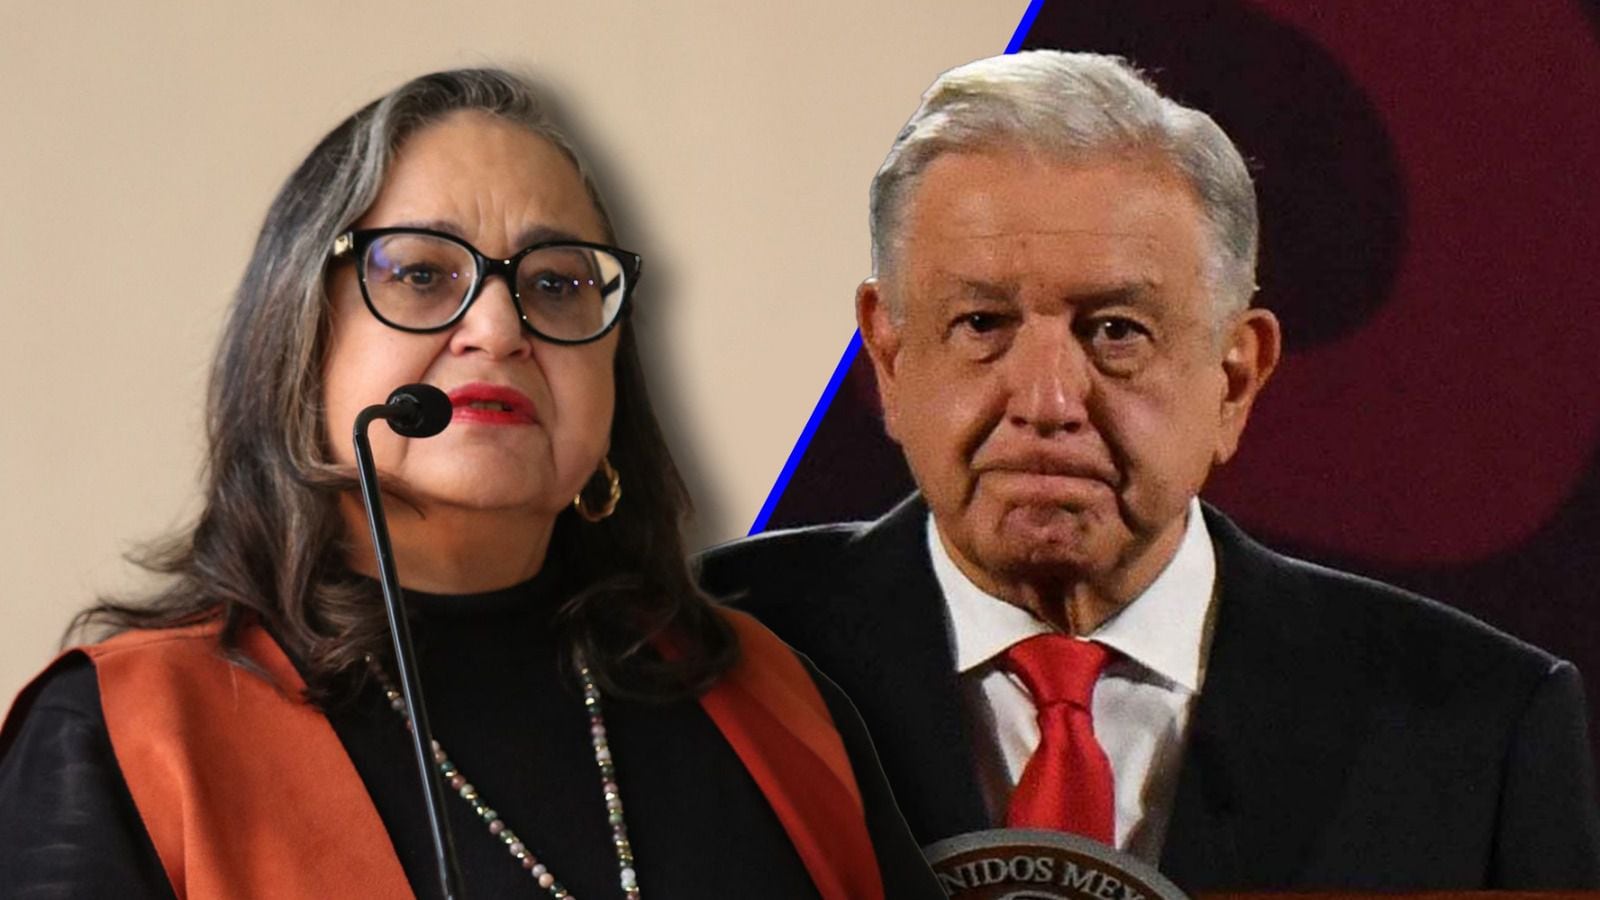 ‘Quien desprecia al pueblo no debería impartir justicia’: AMLO a Norma Piña por crítica a reforma judicial